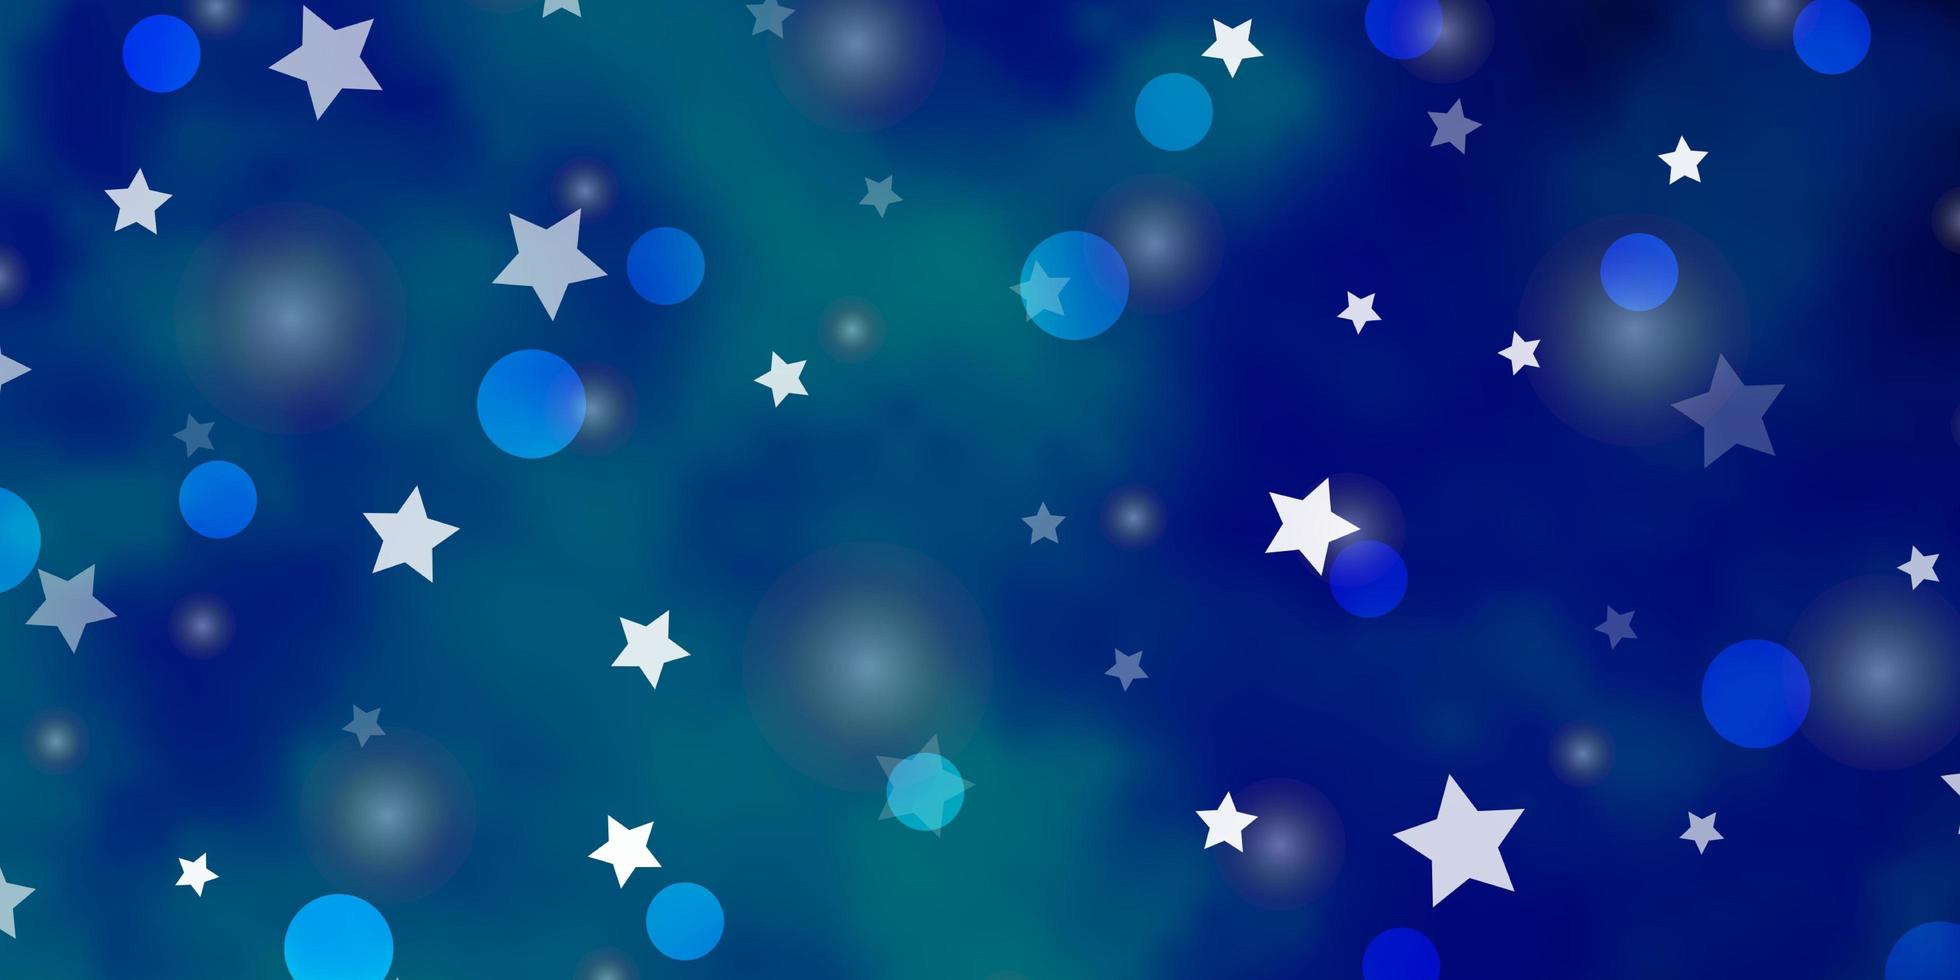 modèle vectoriel bleu clair avec des étoiles de cercles